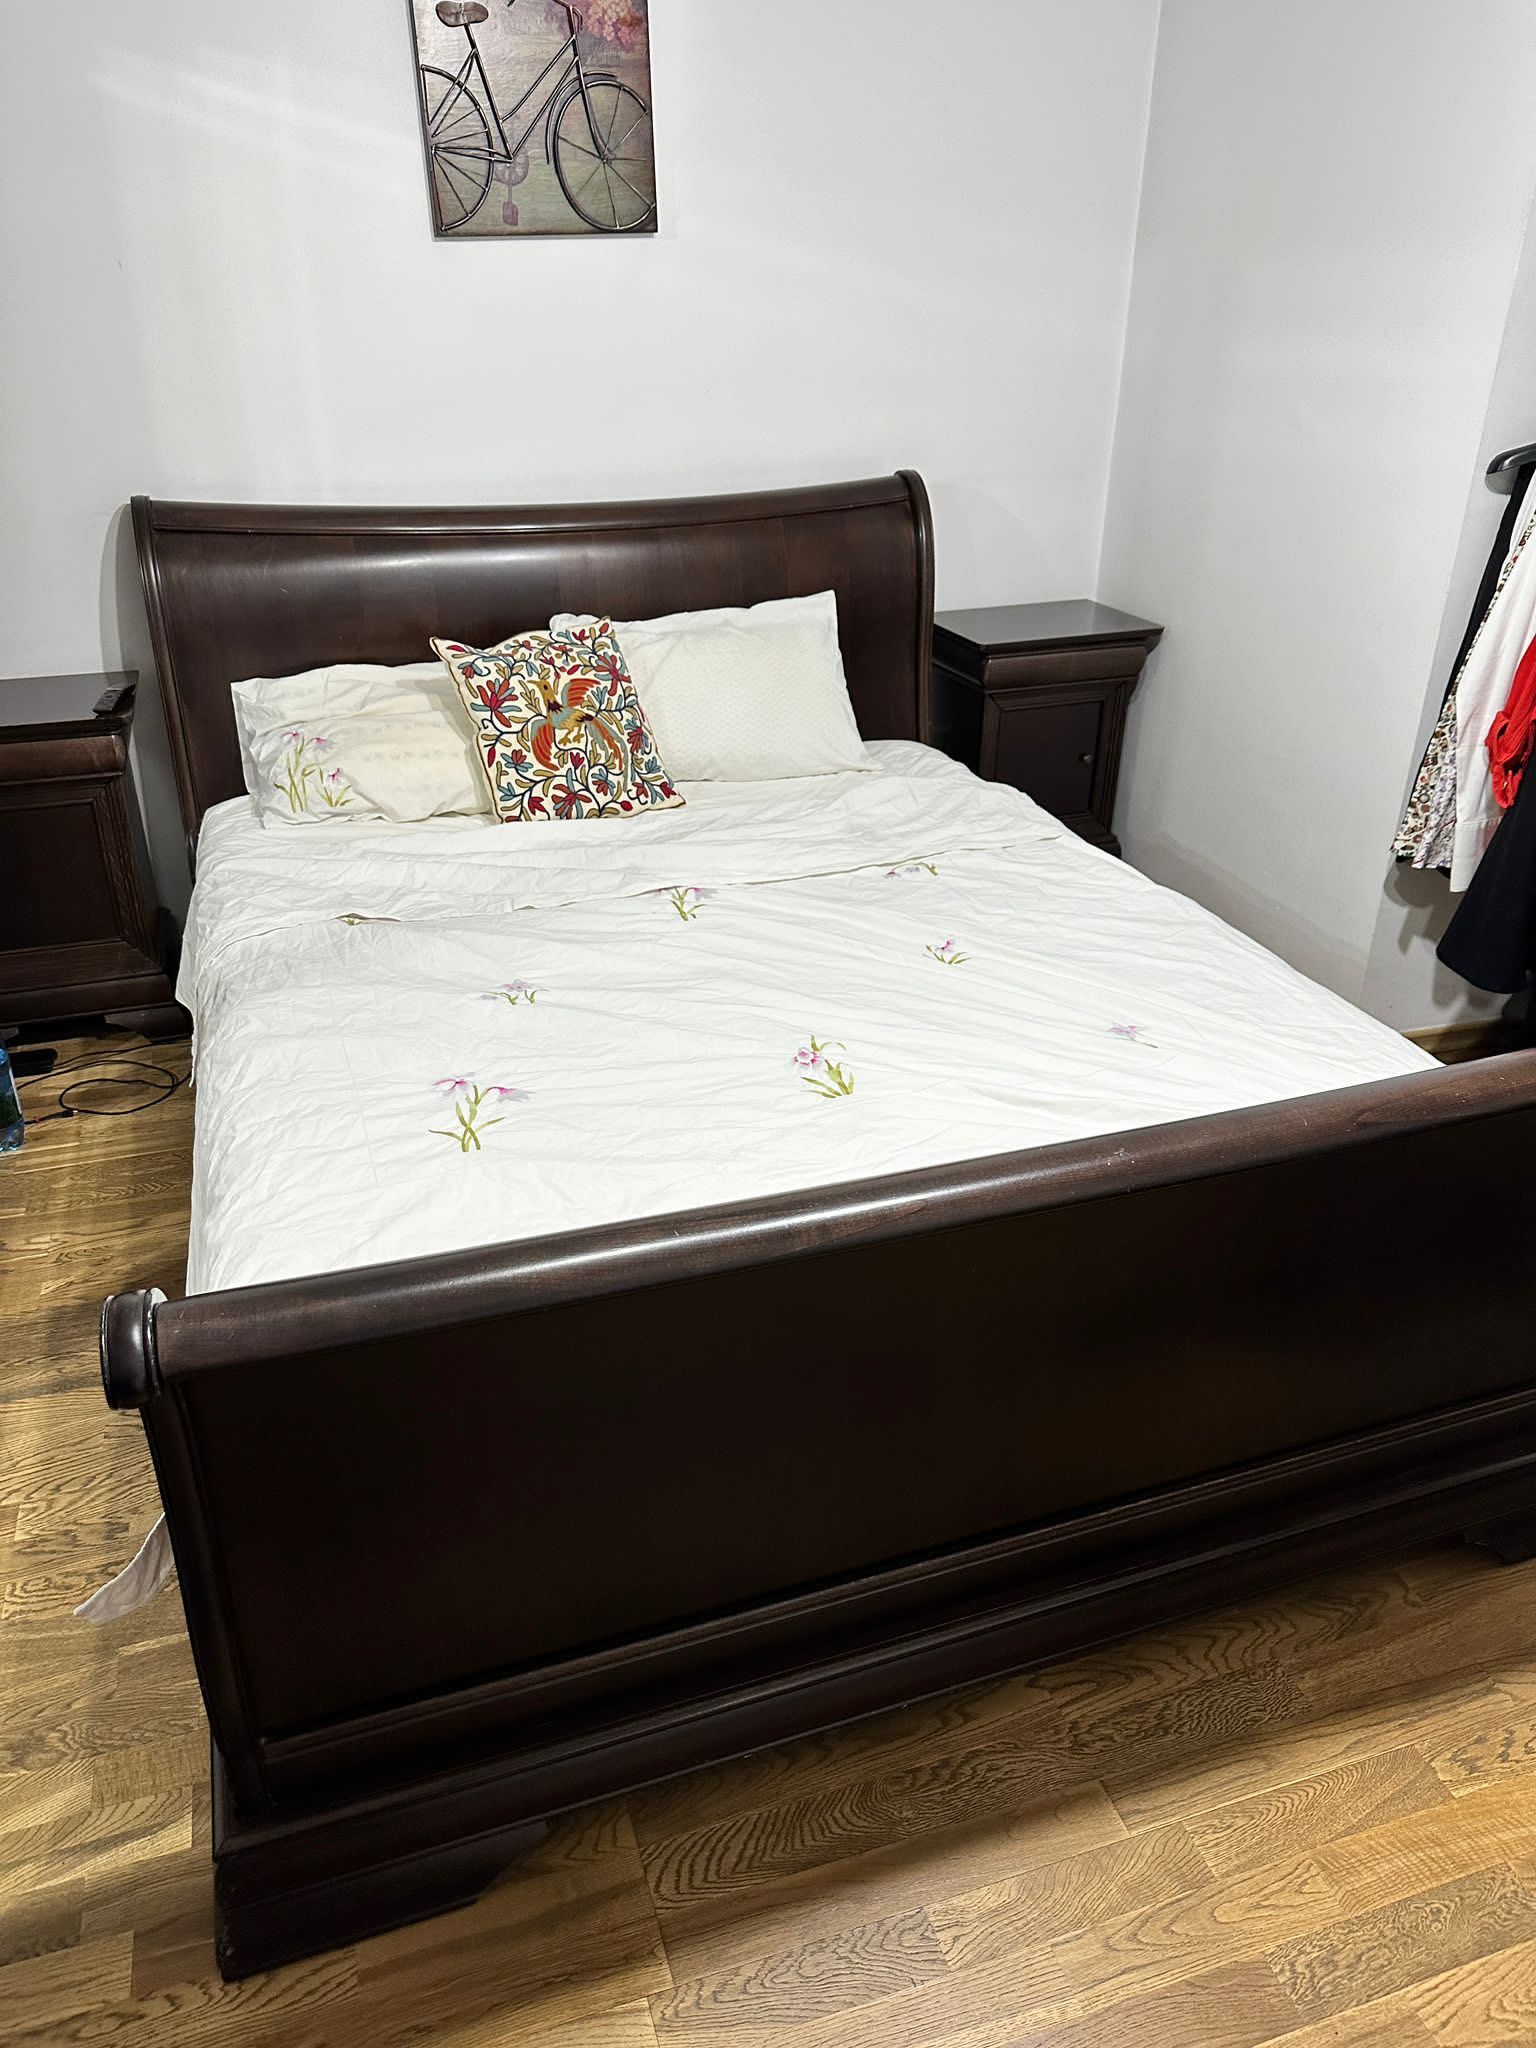 De vânzare pat CHOCOLATE de la Mobexpert - 160x200 cu somieră inclusă